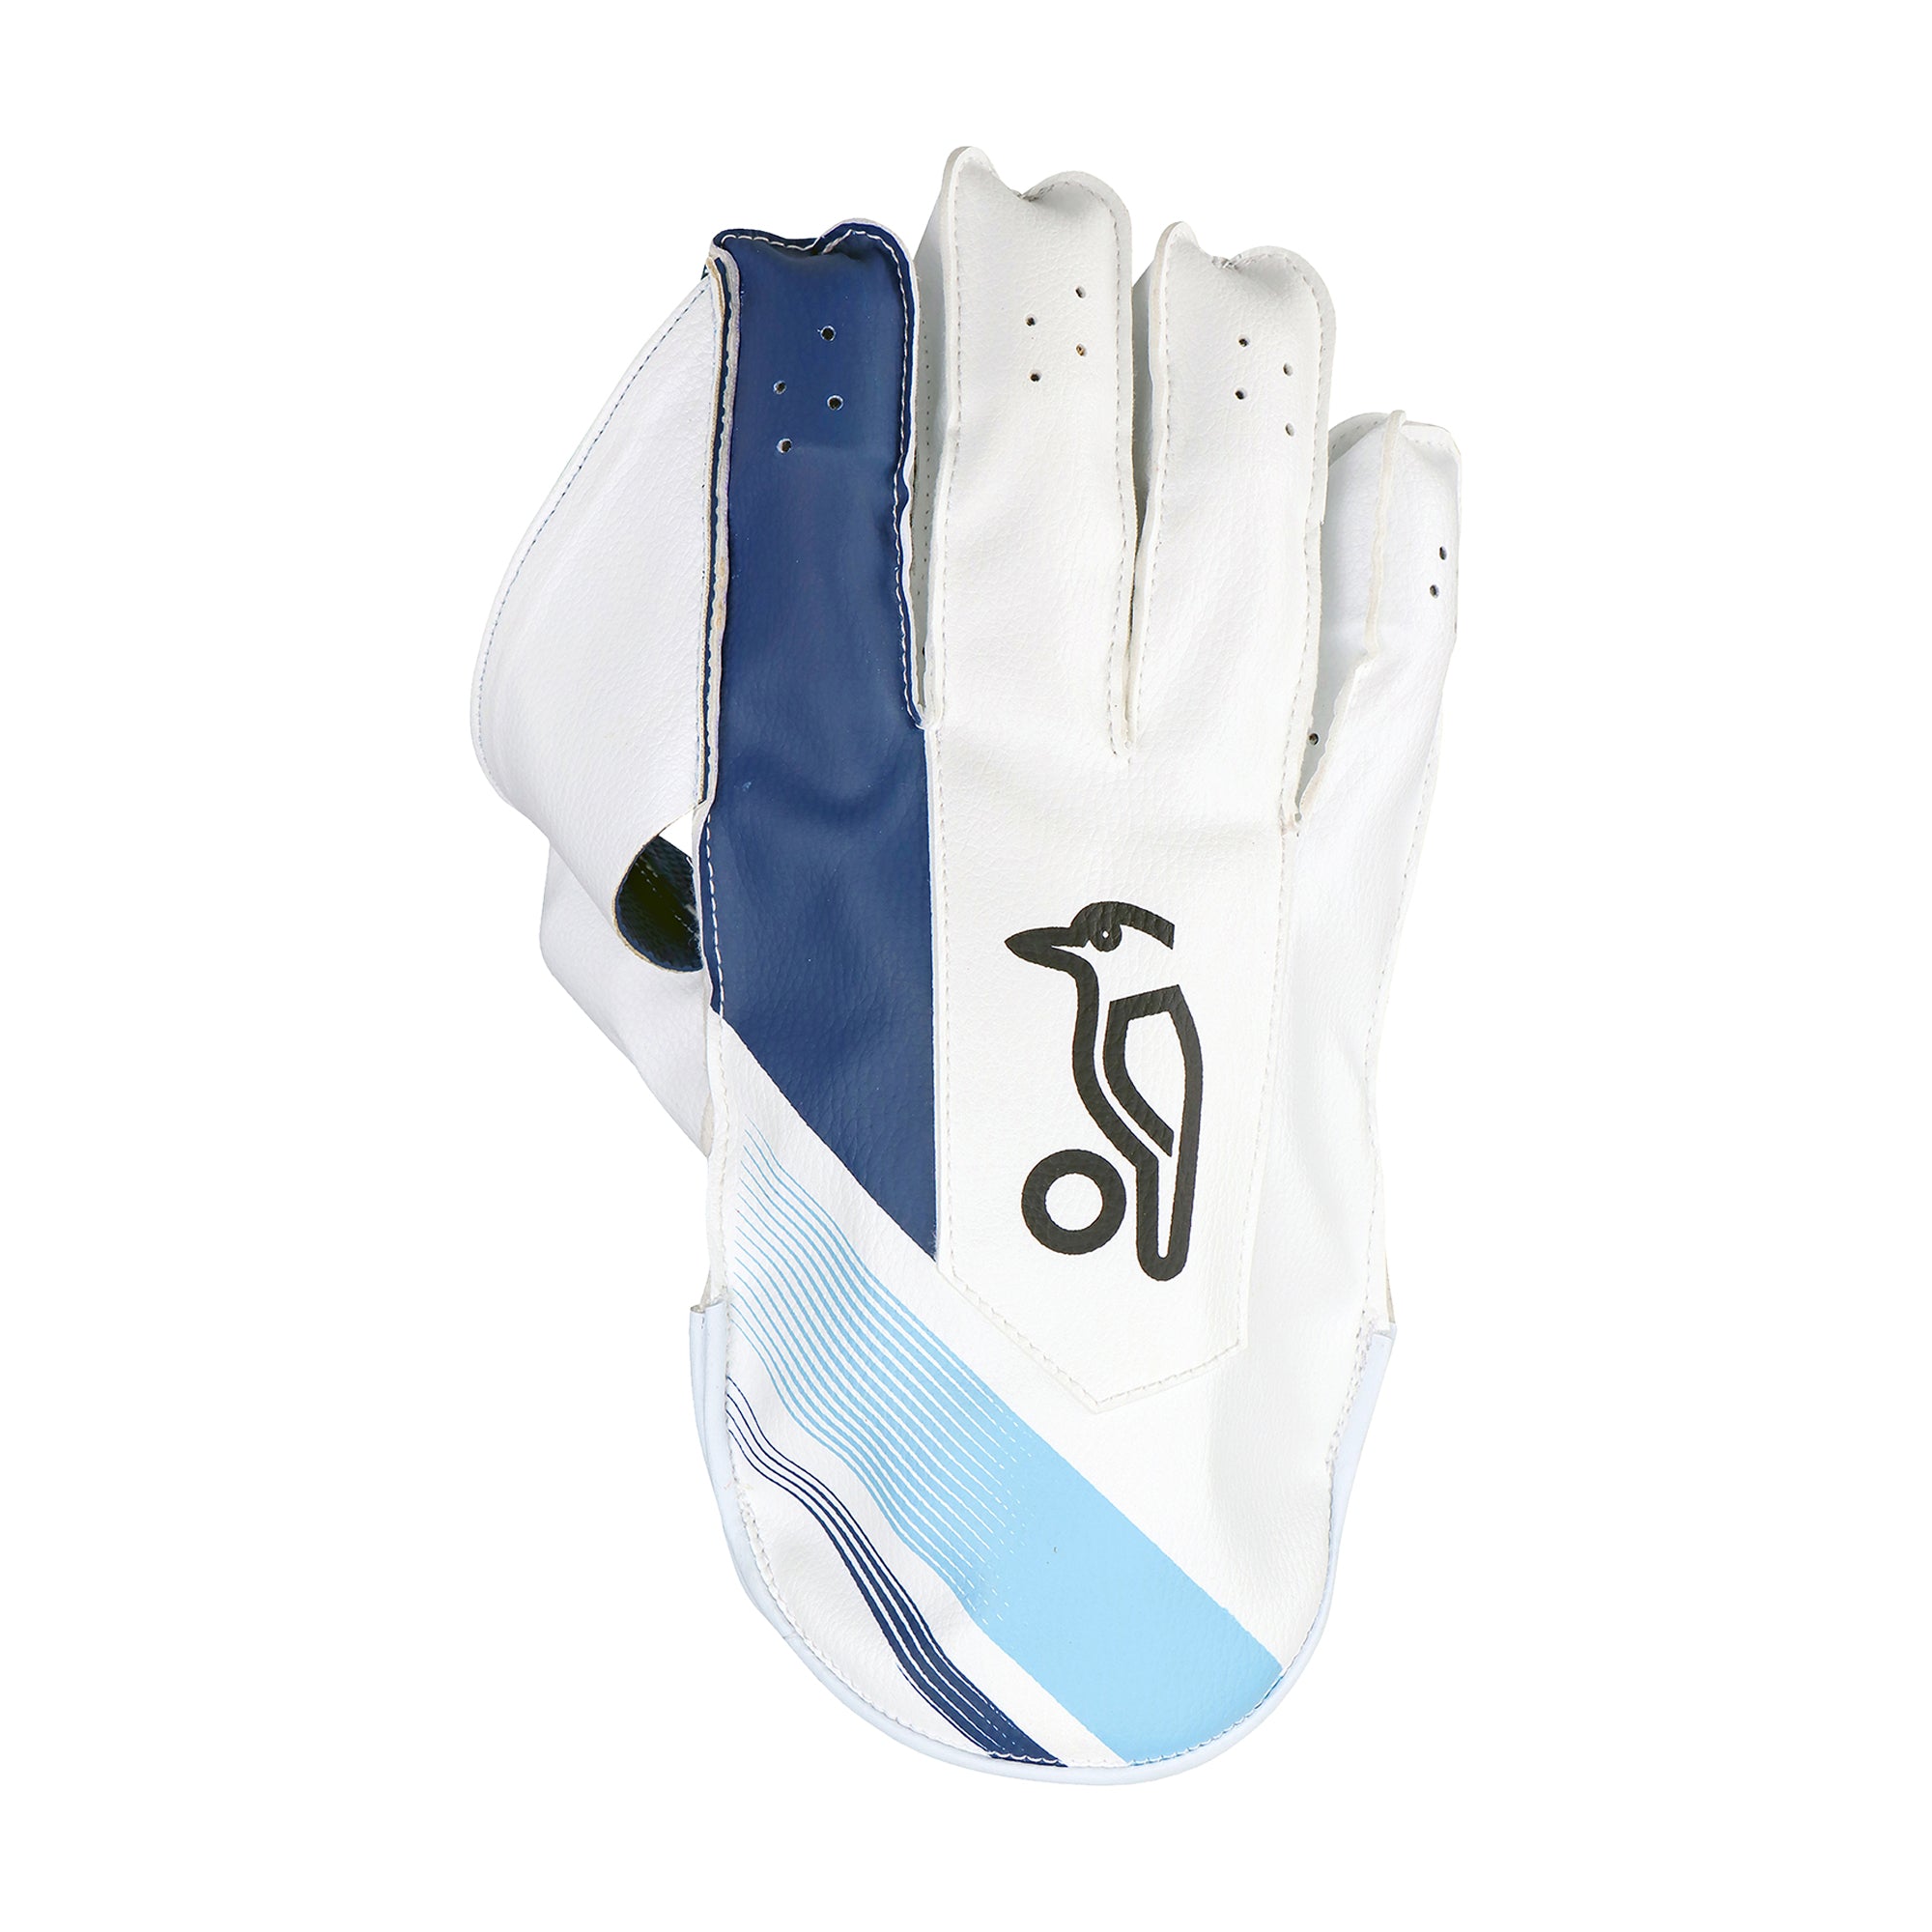 Kookaburra Pro 3.0 Cricket Wicket Keeping Gloves White/Blue